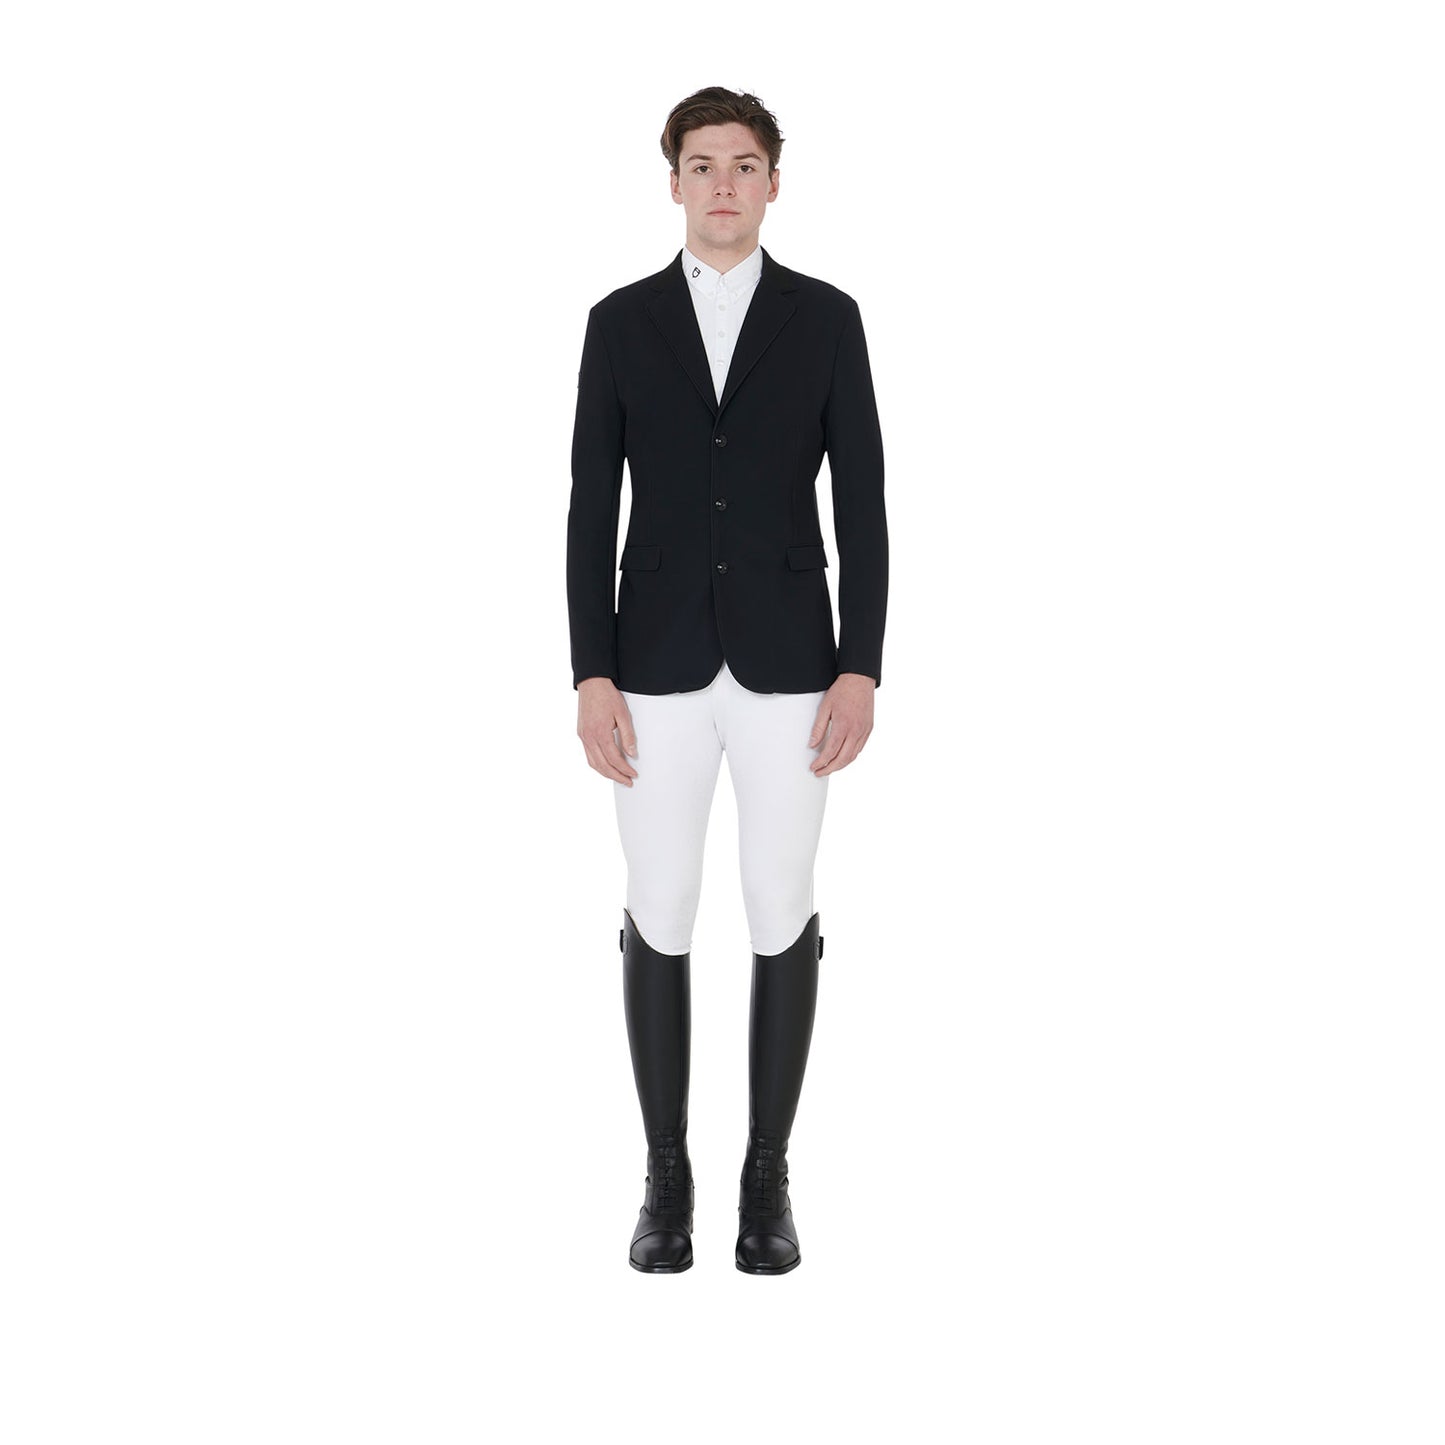 Giacca Uomo "Elegance Man" | Equestro | El gaucho store